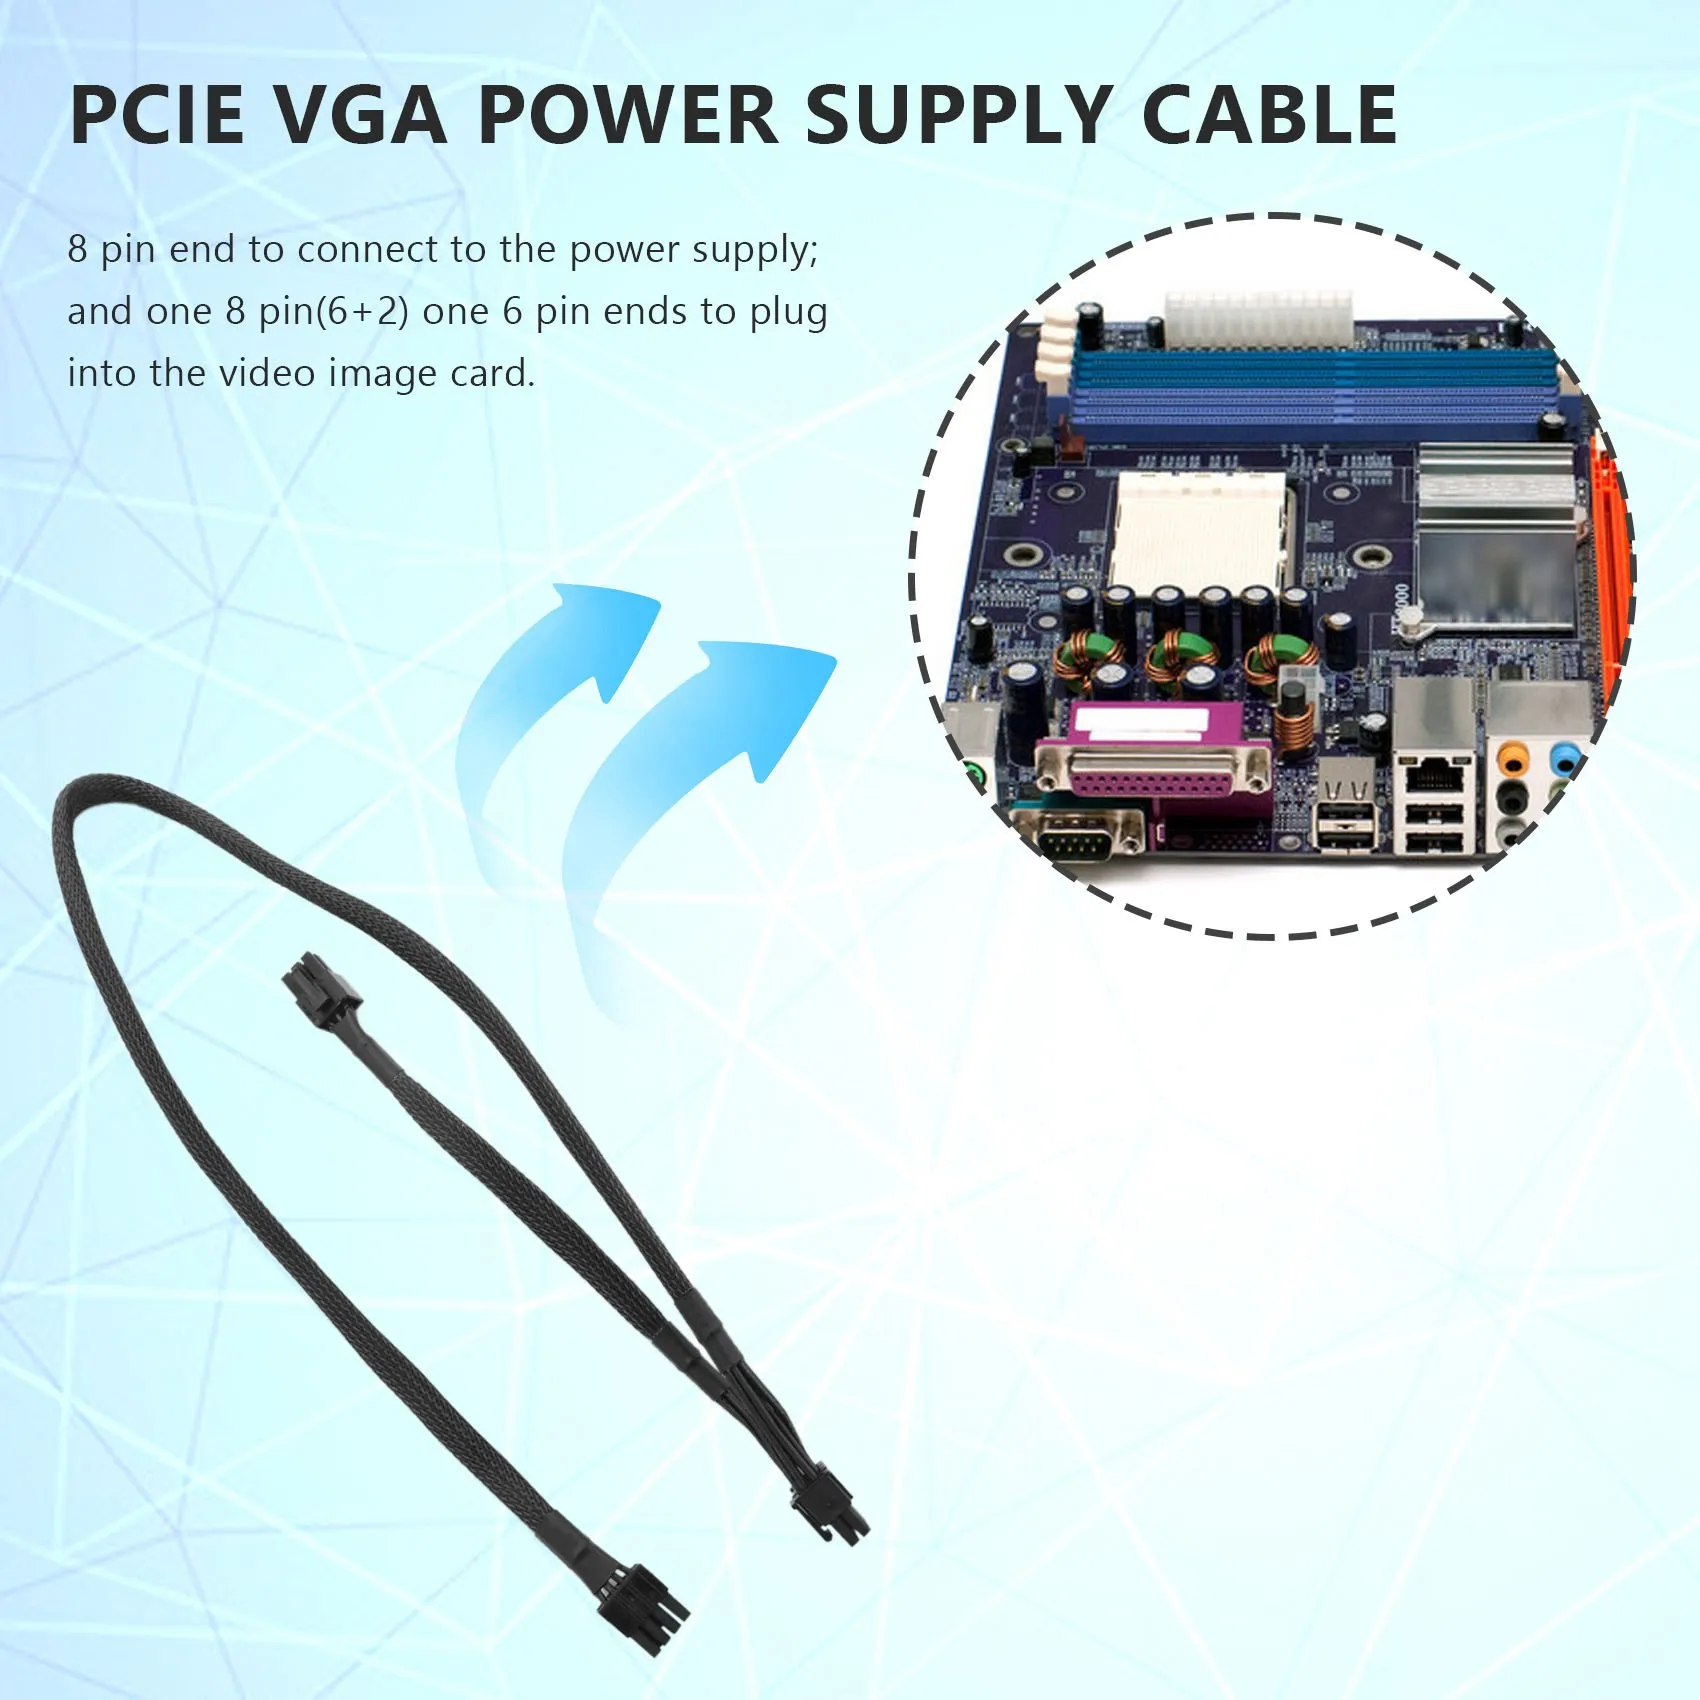 2Pack 8 PIN-Dual 8 Pin 6 TŰS PCIE VGA Tápegység Kábel Supernova G2 G3 G5 P2 T2 GS G+ 650 750 850 1000